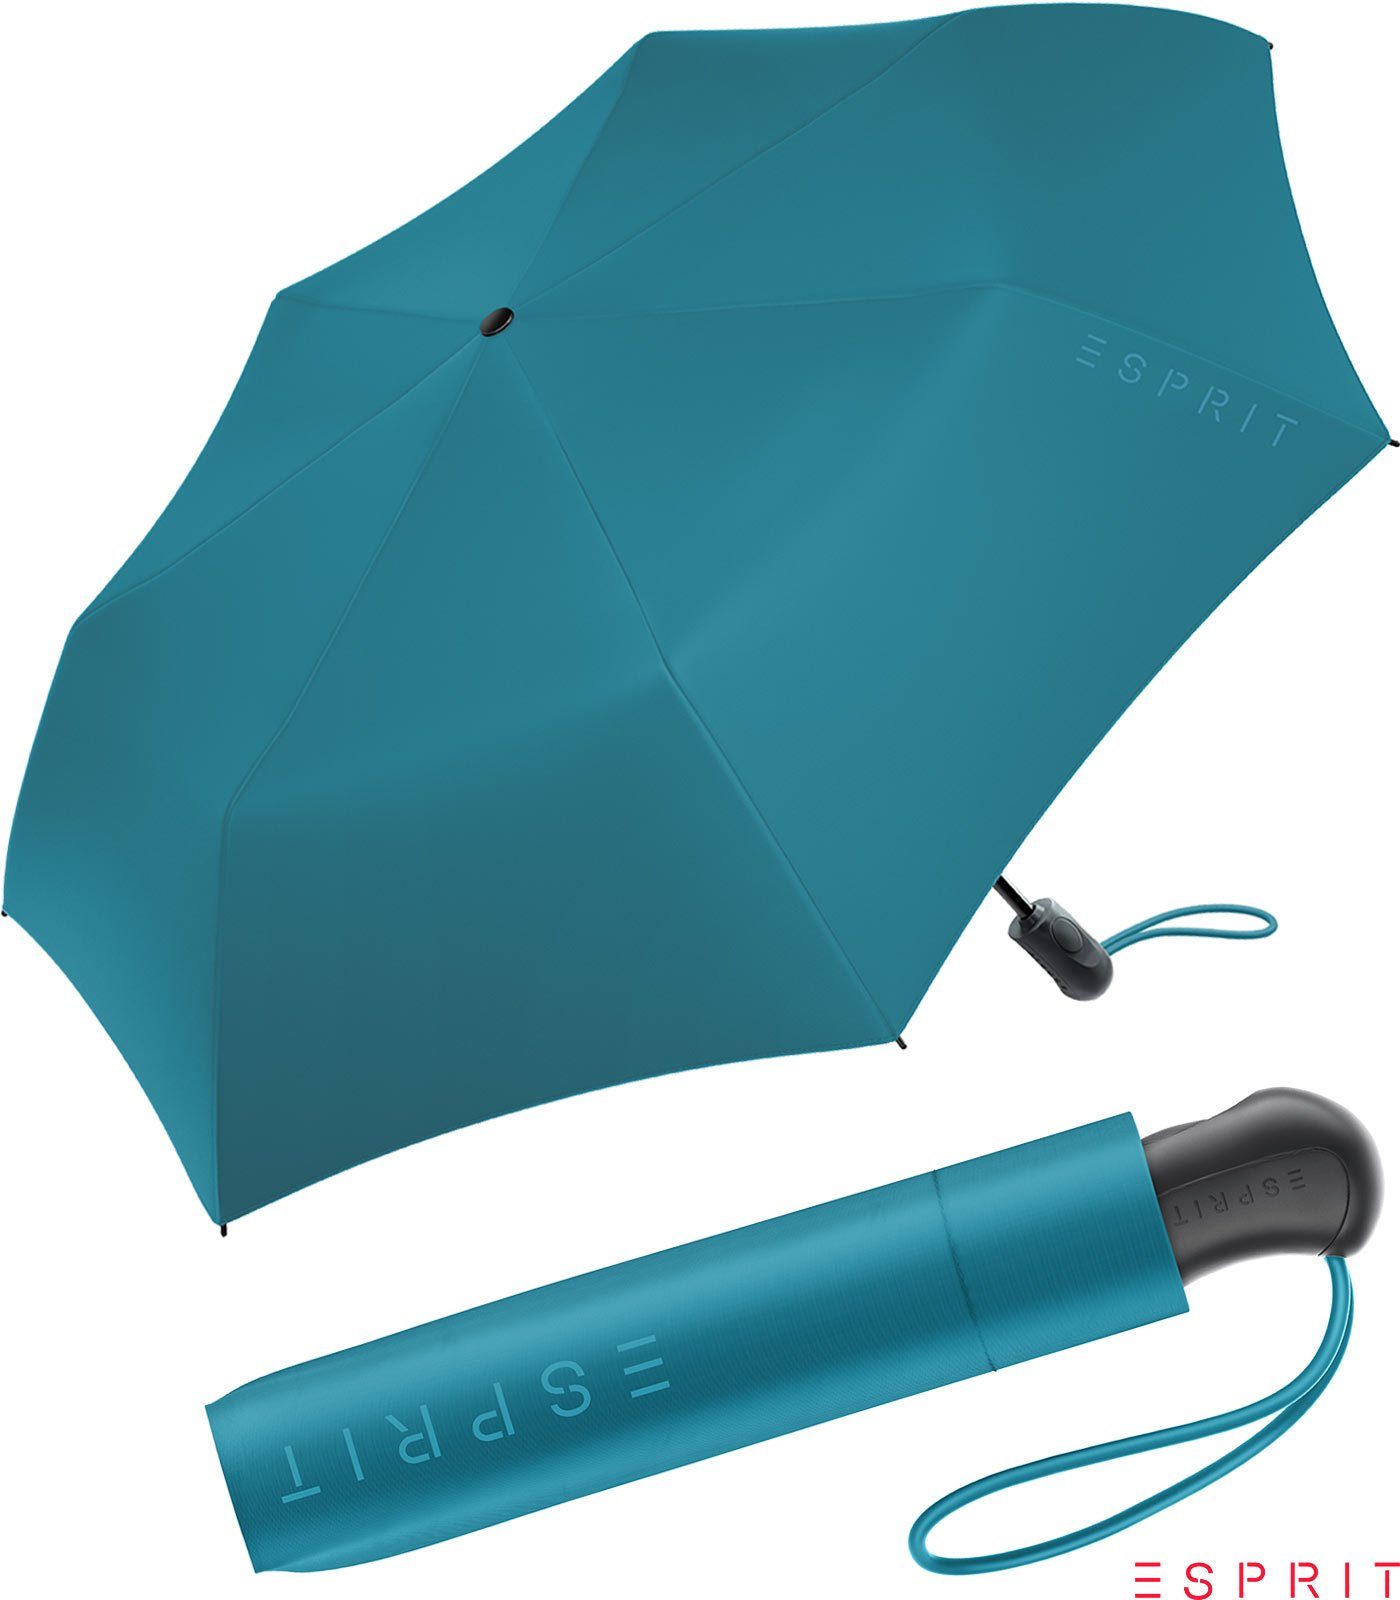 Esprit Taschenregenschirm Damen Easymatic Light Auf-Zu Automatik HW 2022 - ocean depths, stabil, praktisch, in den neuen Trendfarben blau